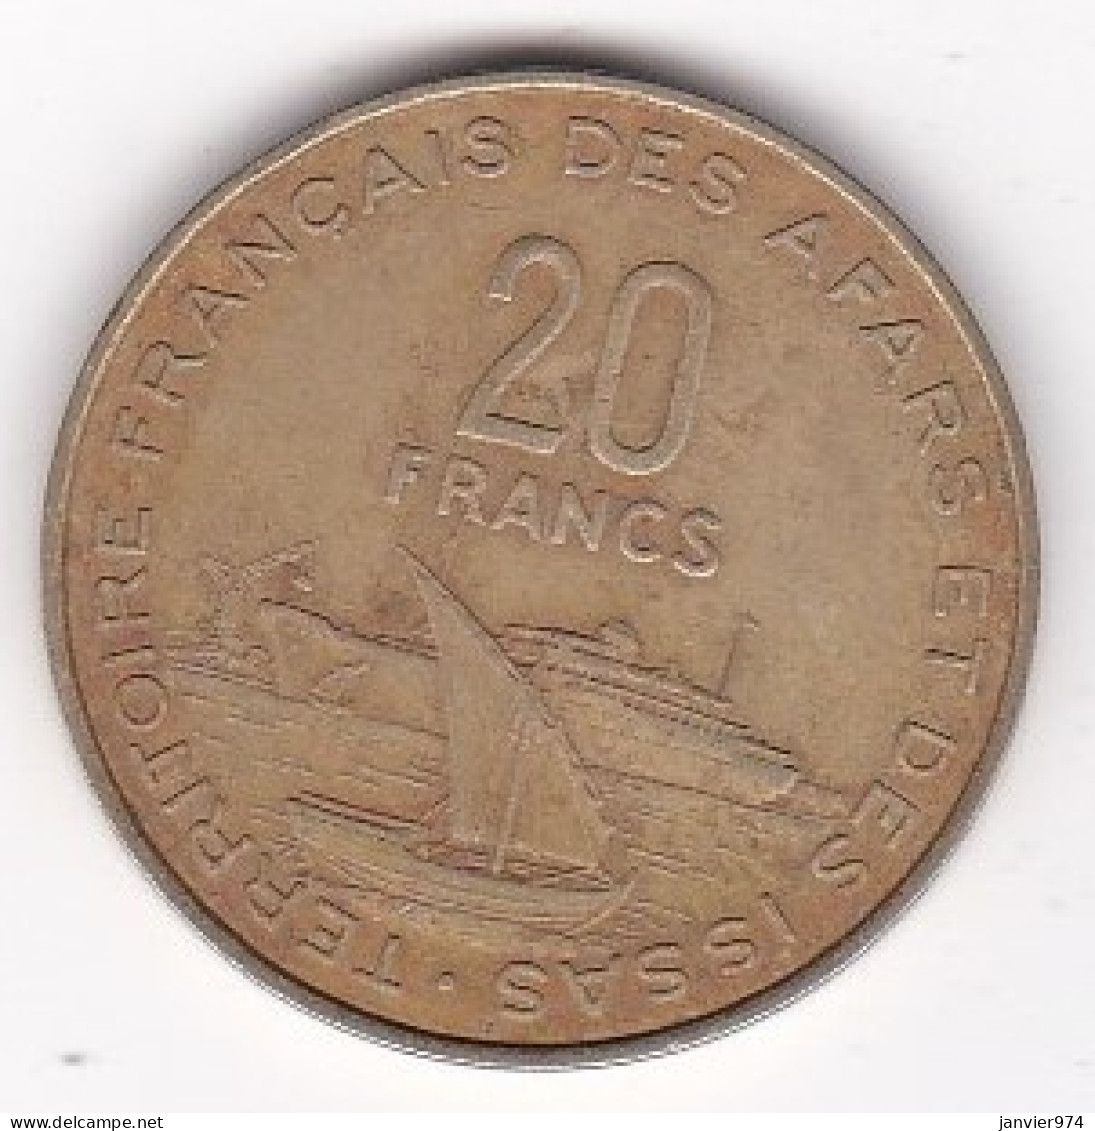 Territoire Français Des Afars Et Des Issas Djibouti 20 Francs 1975 , En Cupro Alu Nickel , Lec# 66 - Djibouti